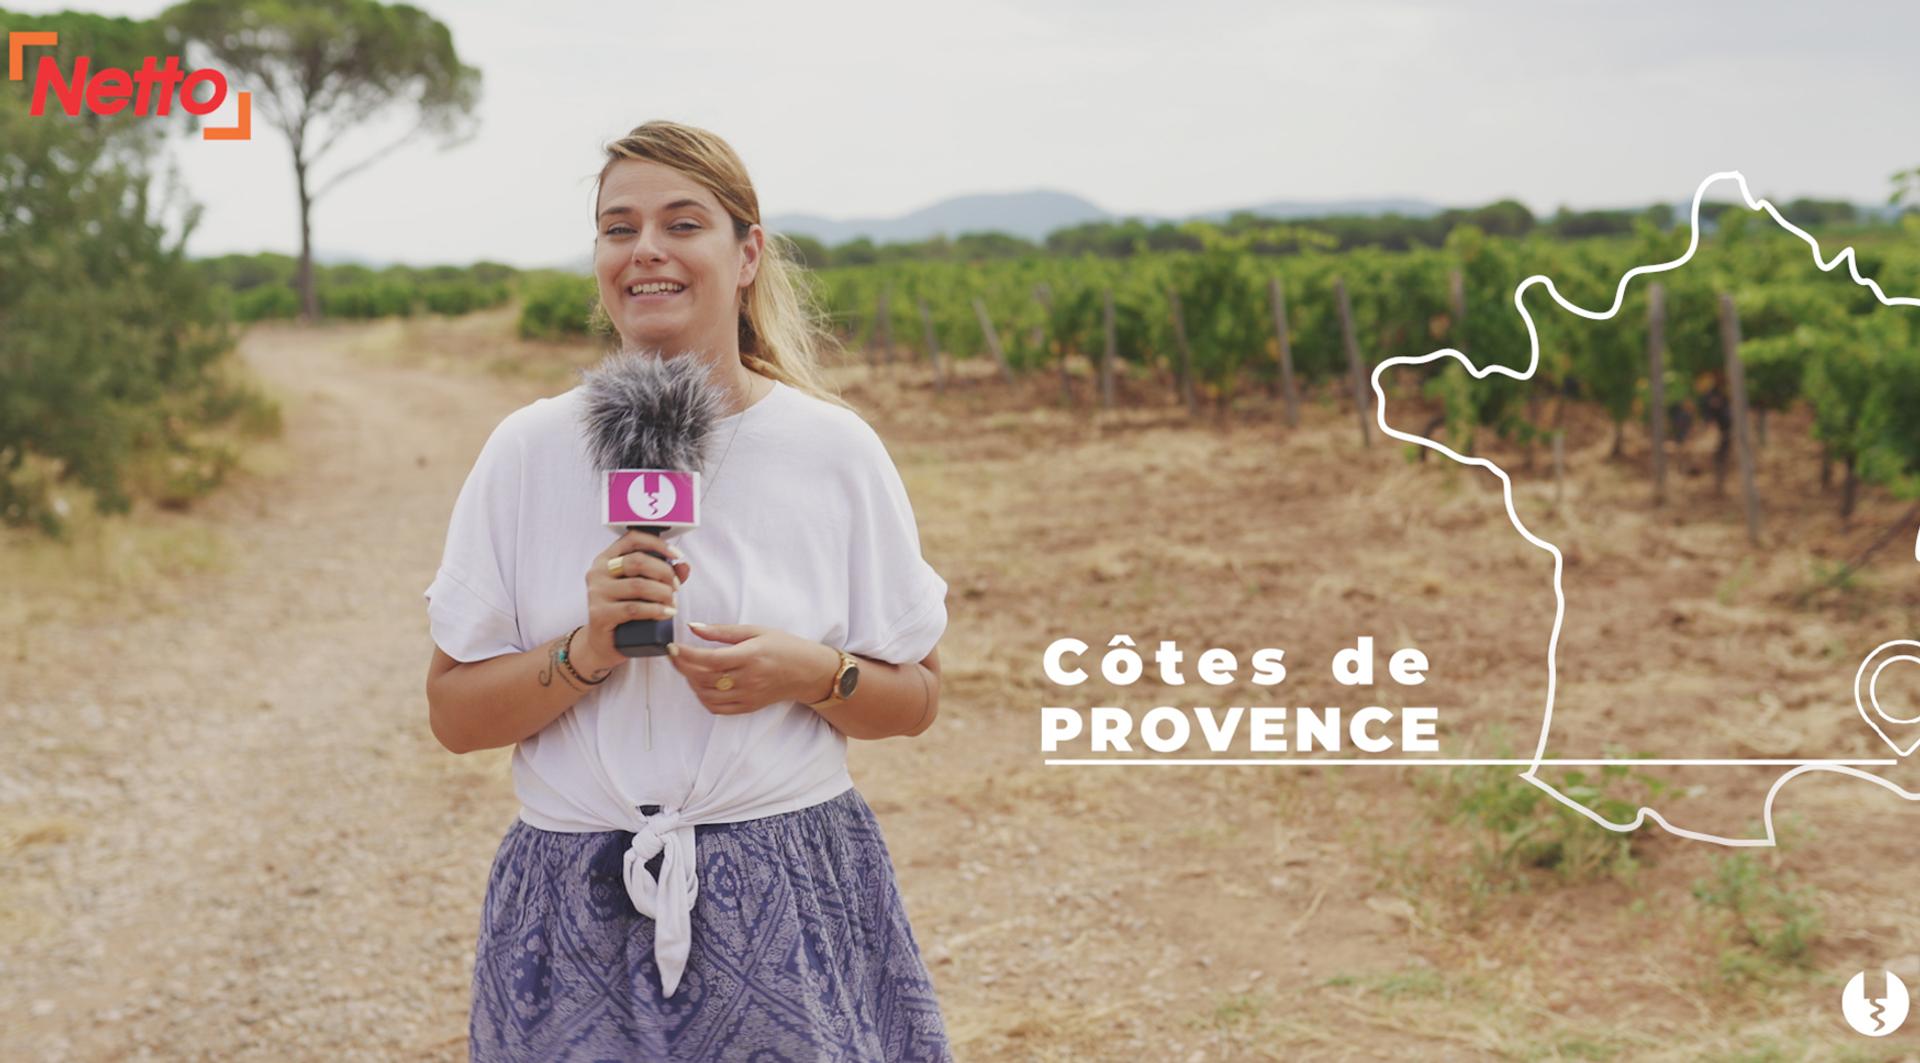 Foire aux vins NETTO 2020 - Etape 5 : Côtes de Provence